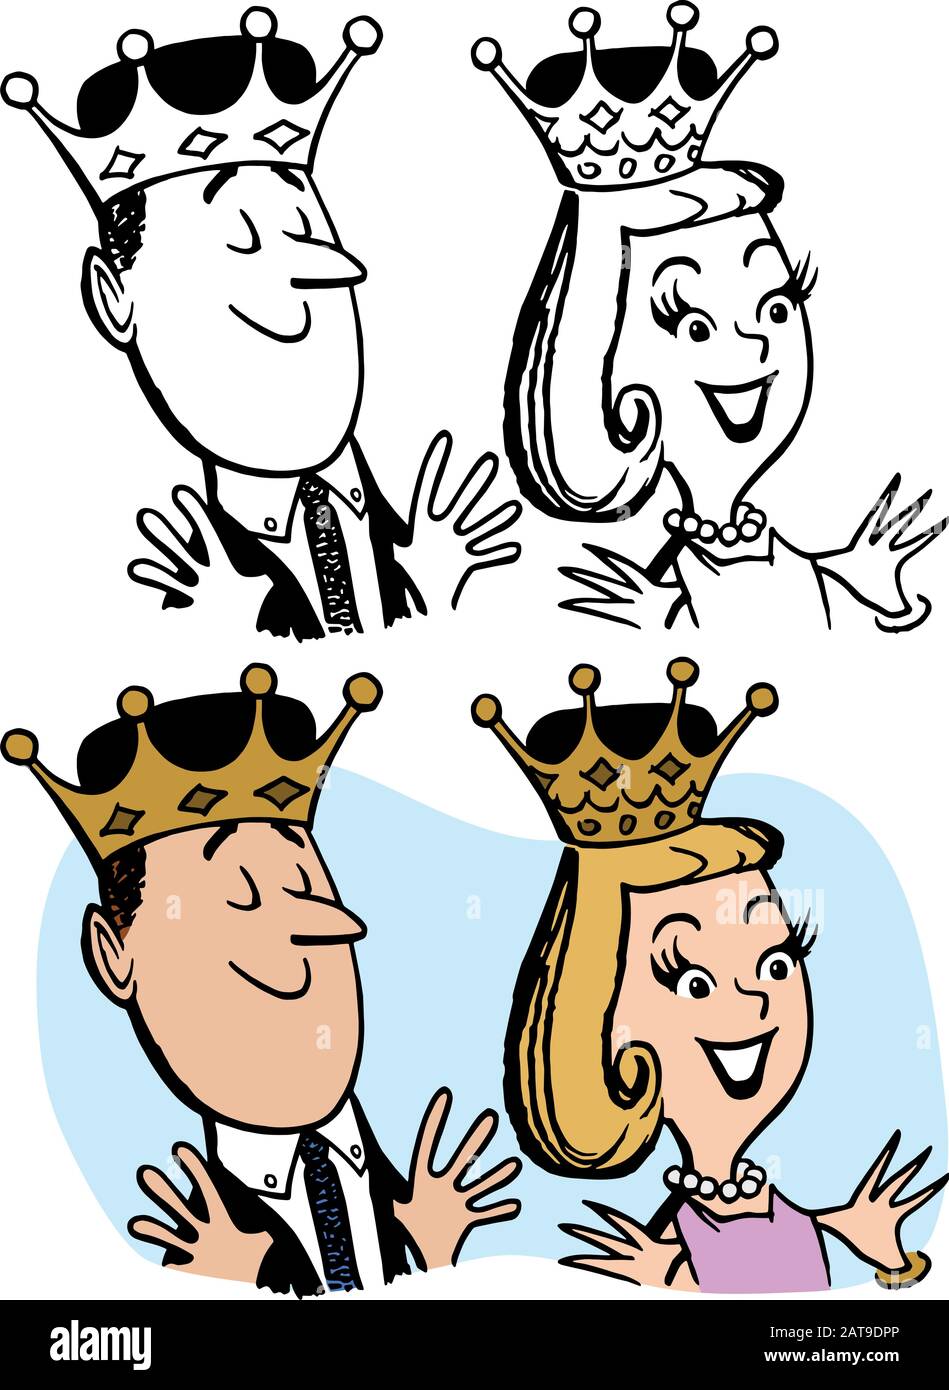 Un dessin animé d'un homme et d'une femme portant des couronnes royales. Illustration de Vecteur